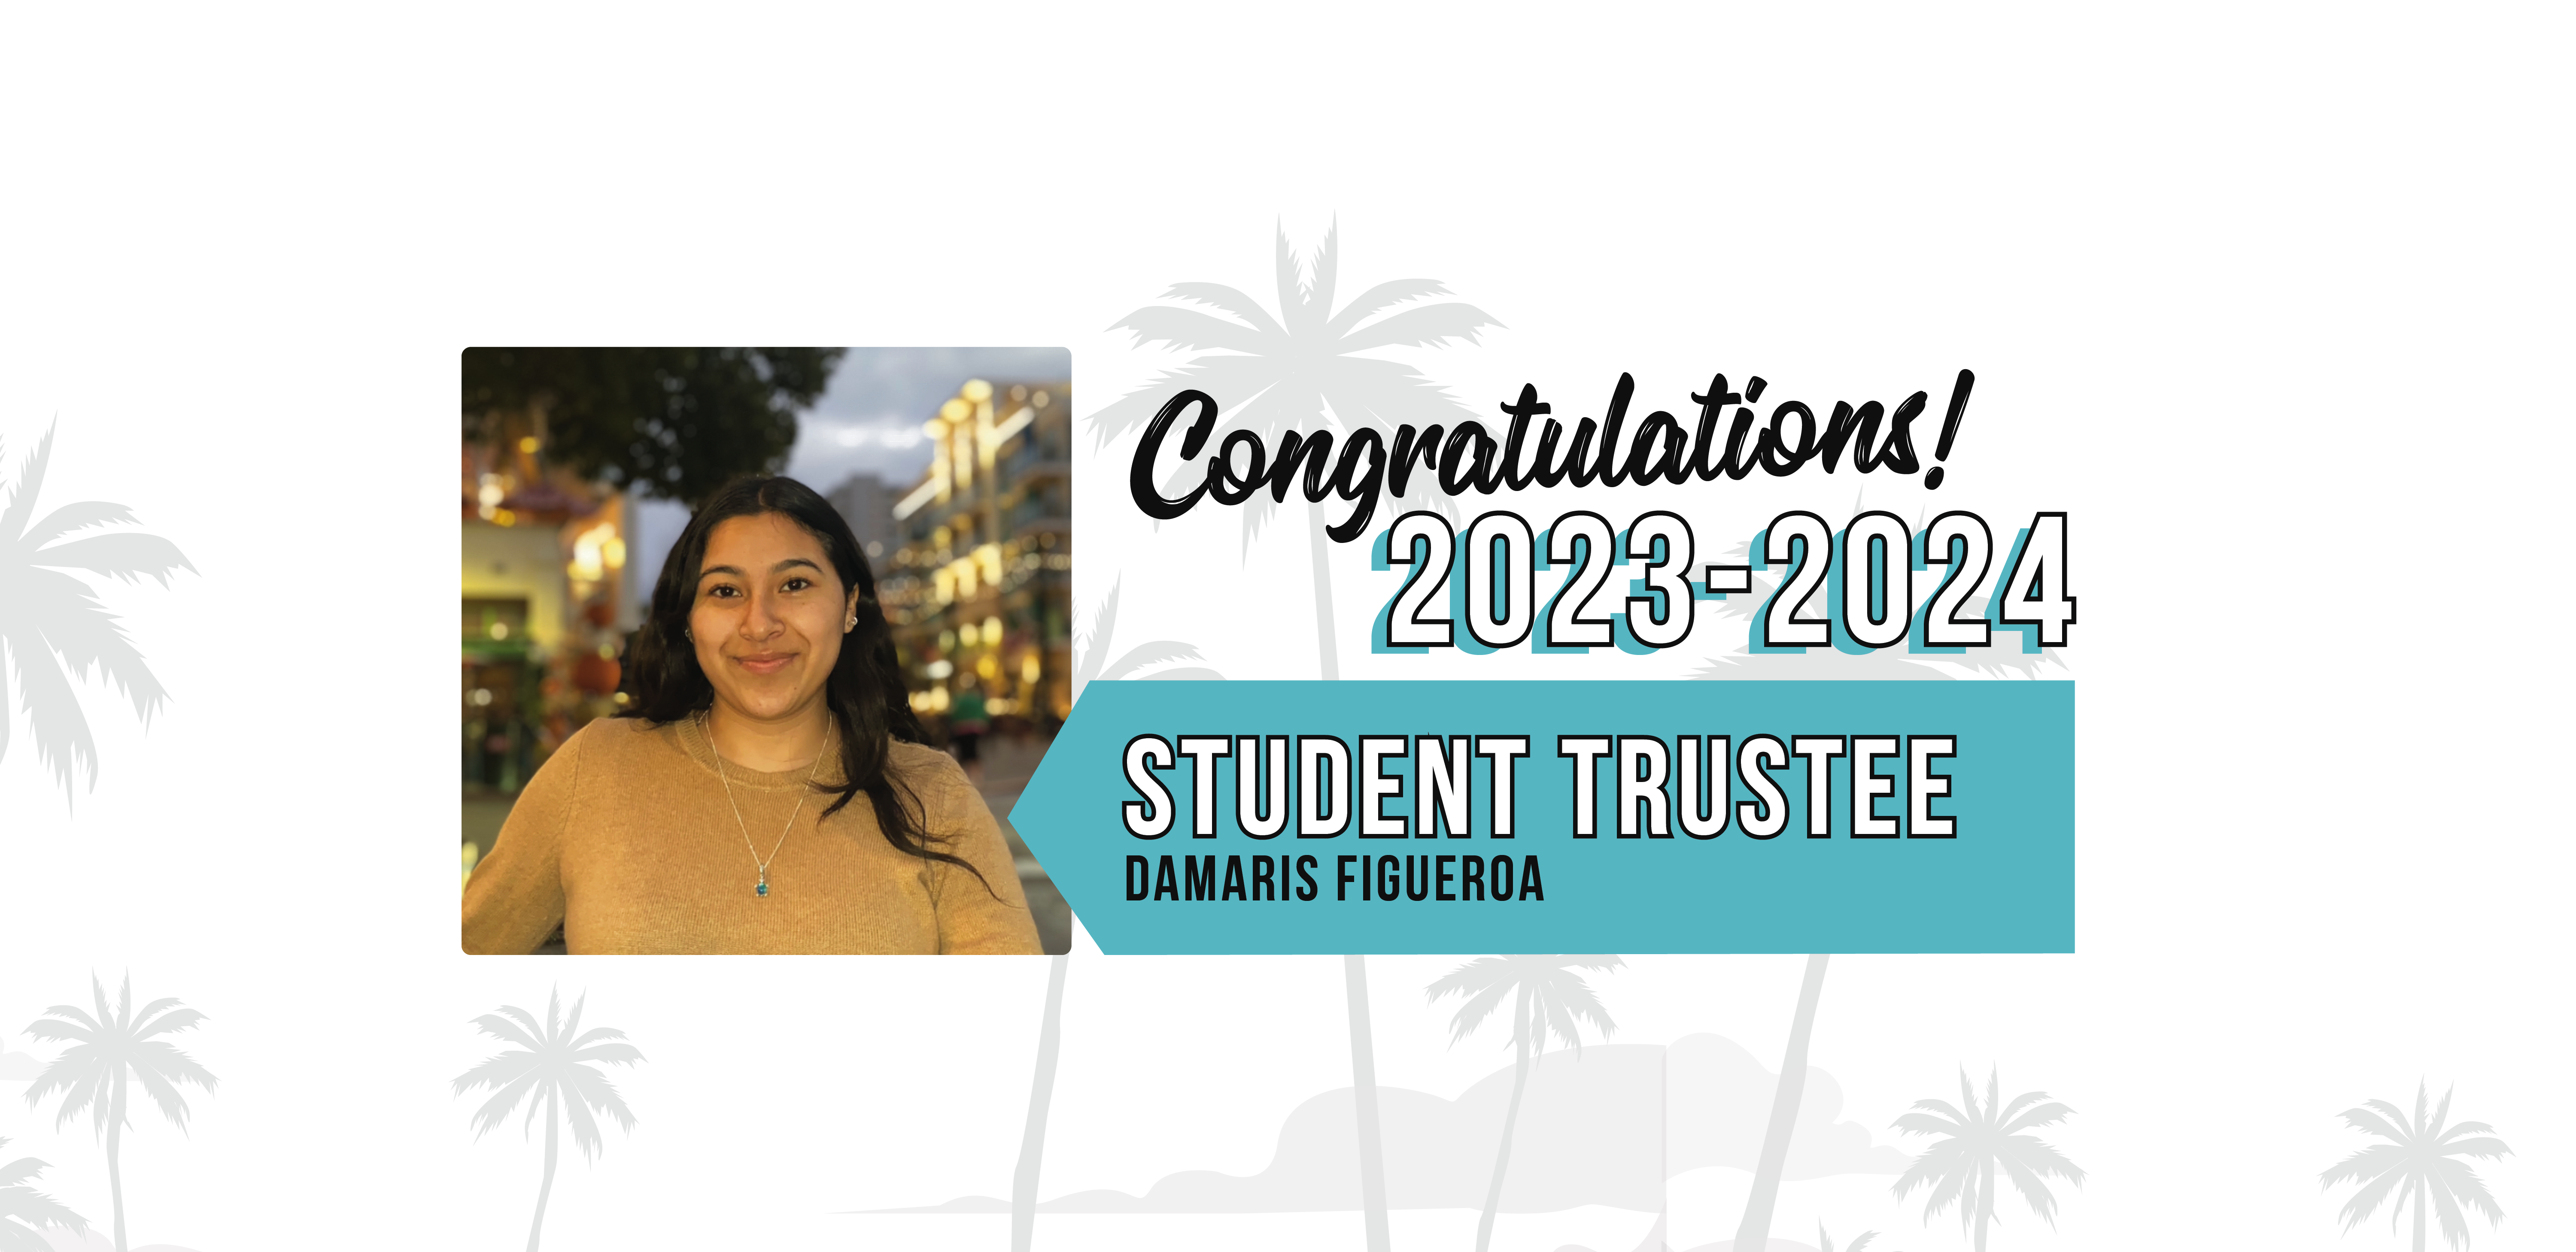 Congratulations! 2023-2024 Student Trustee Damaris Figueroa